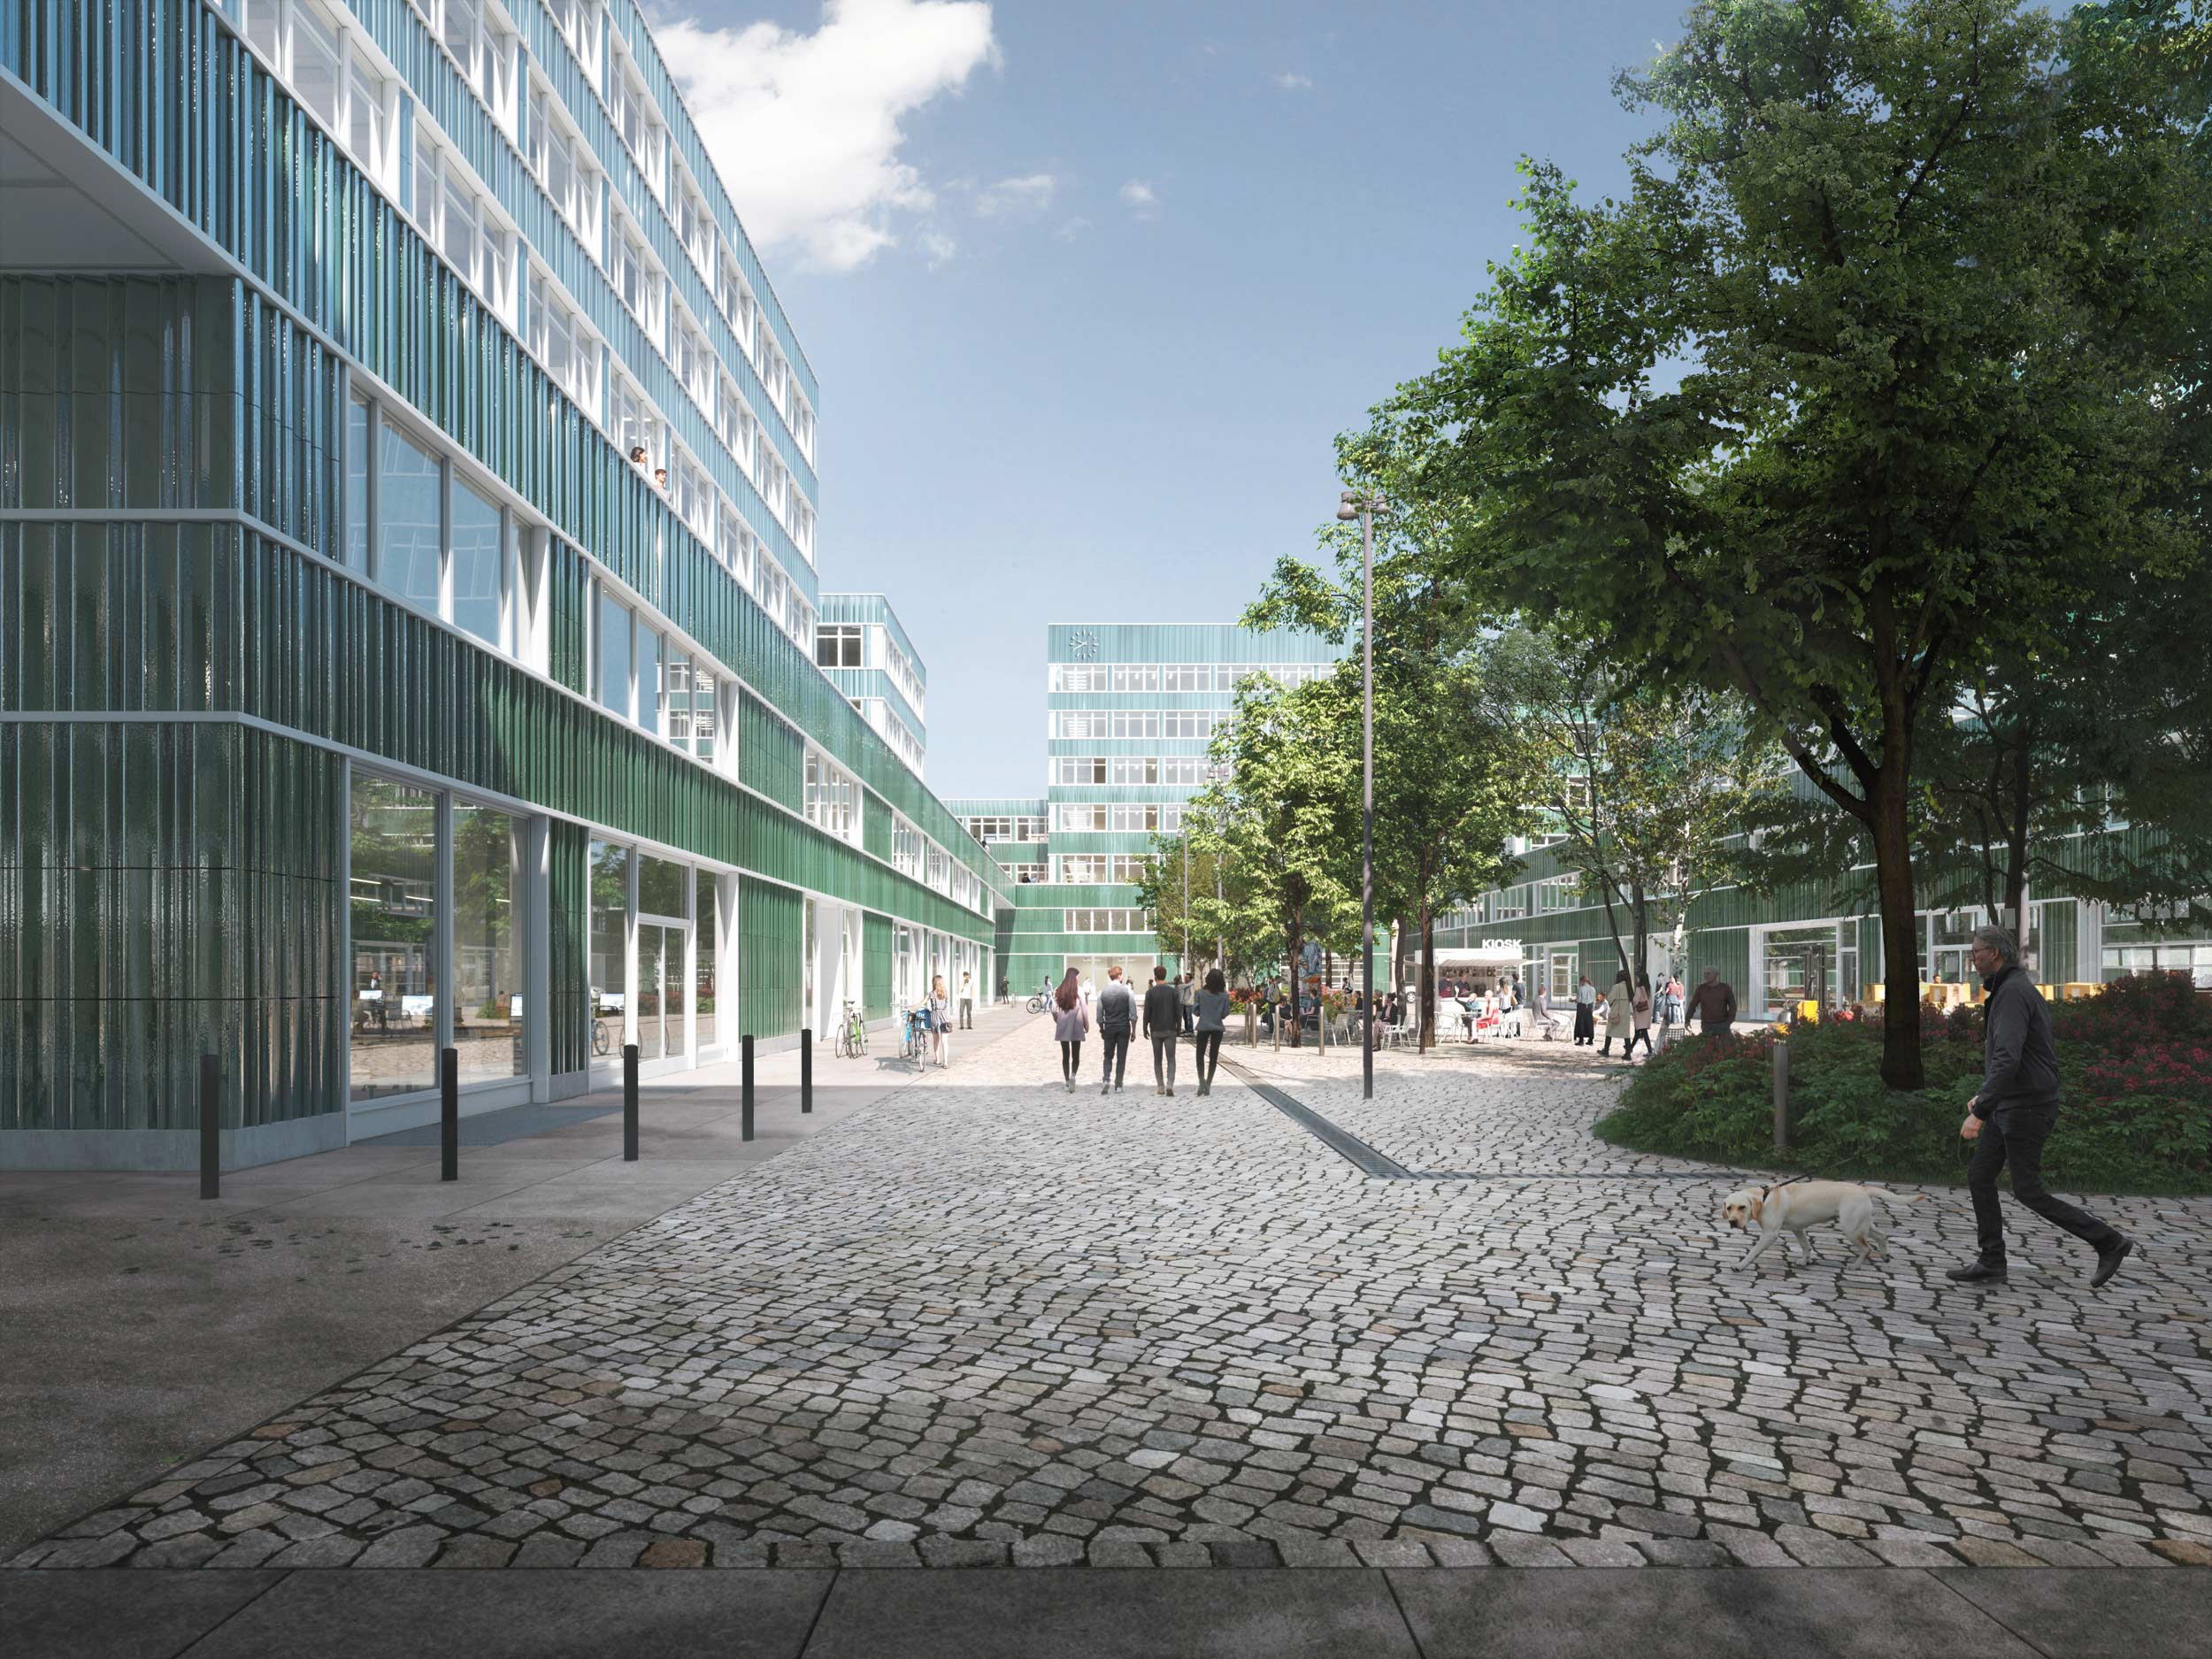 Büro und Industrie Campus "Berlin Decks" - Perspektive Hof